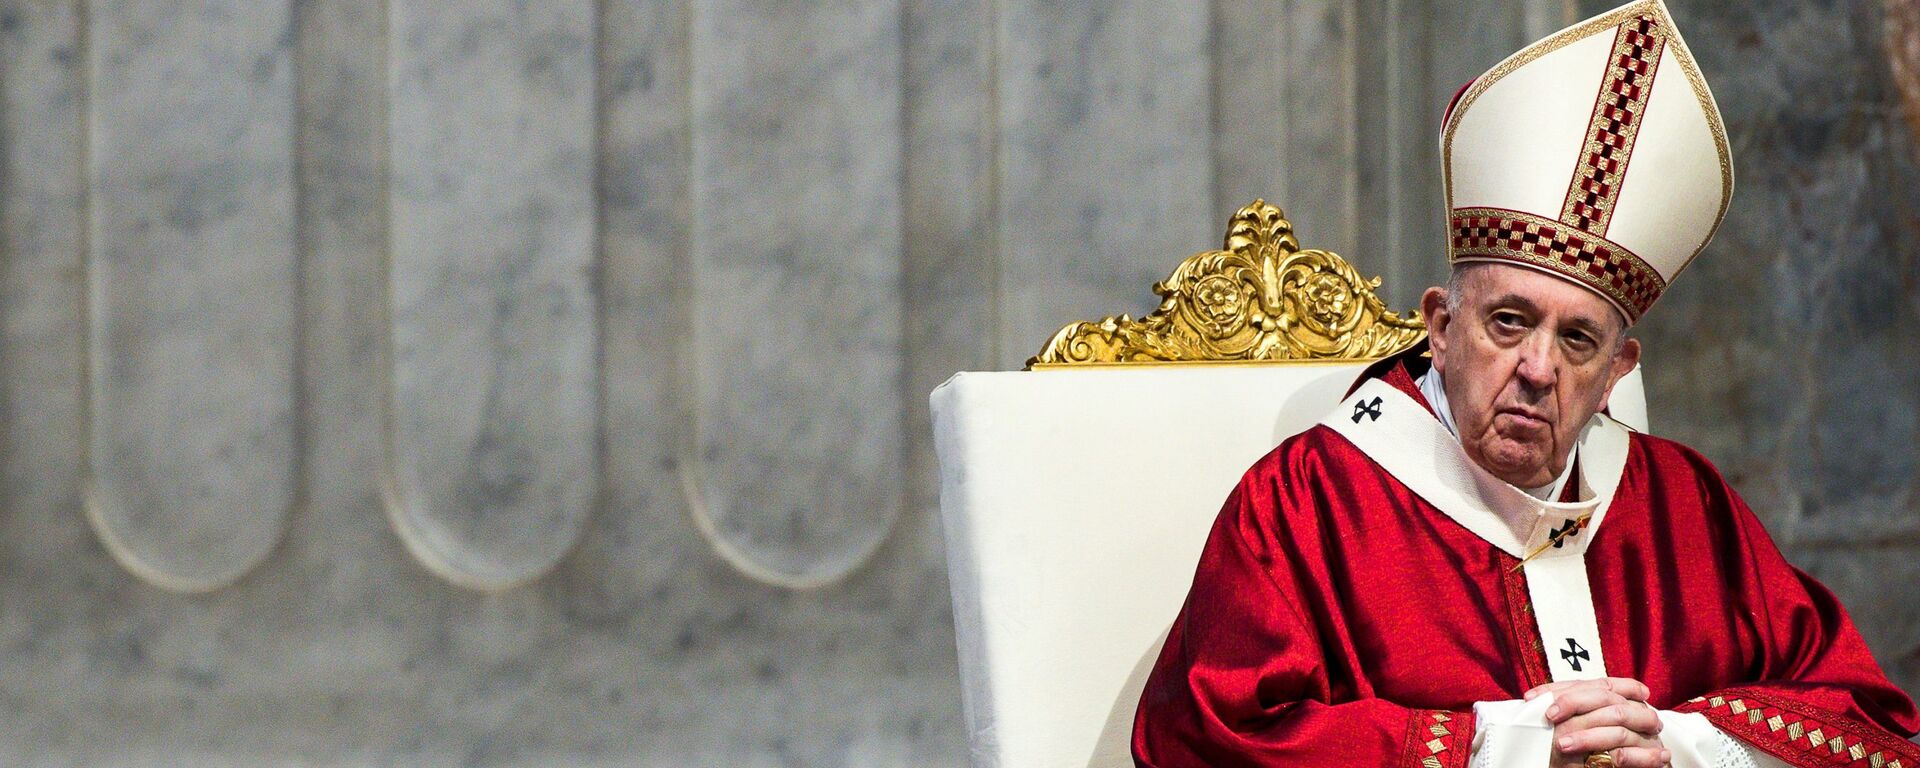 Папа Римский Франциск во время мессы в базилике Святого Петра в Ватикане - Sputnik Беларусь, 1920, 28.11.2021